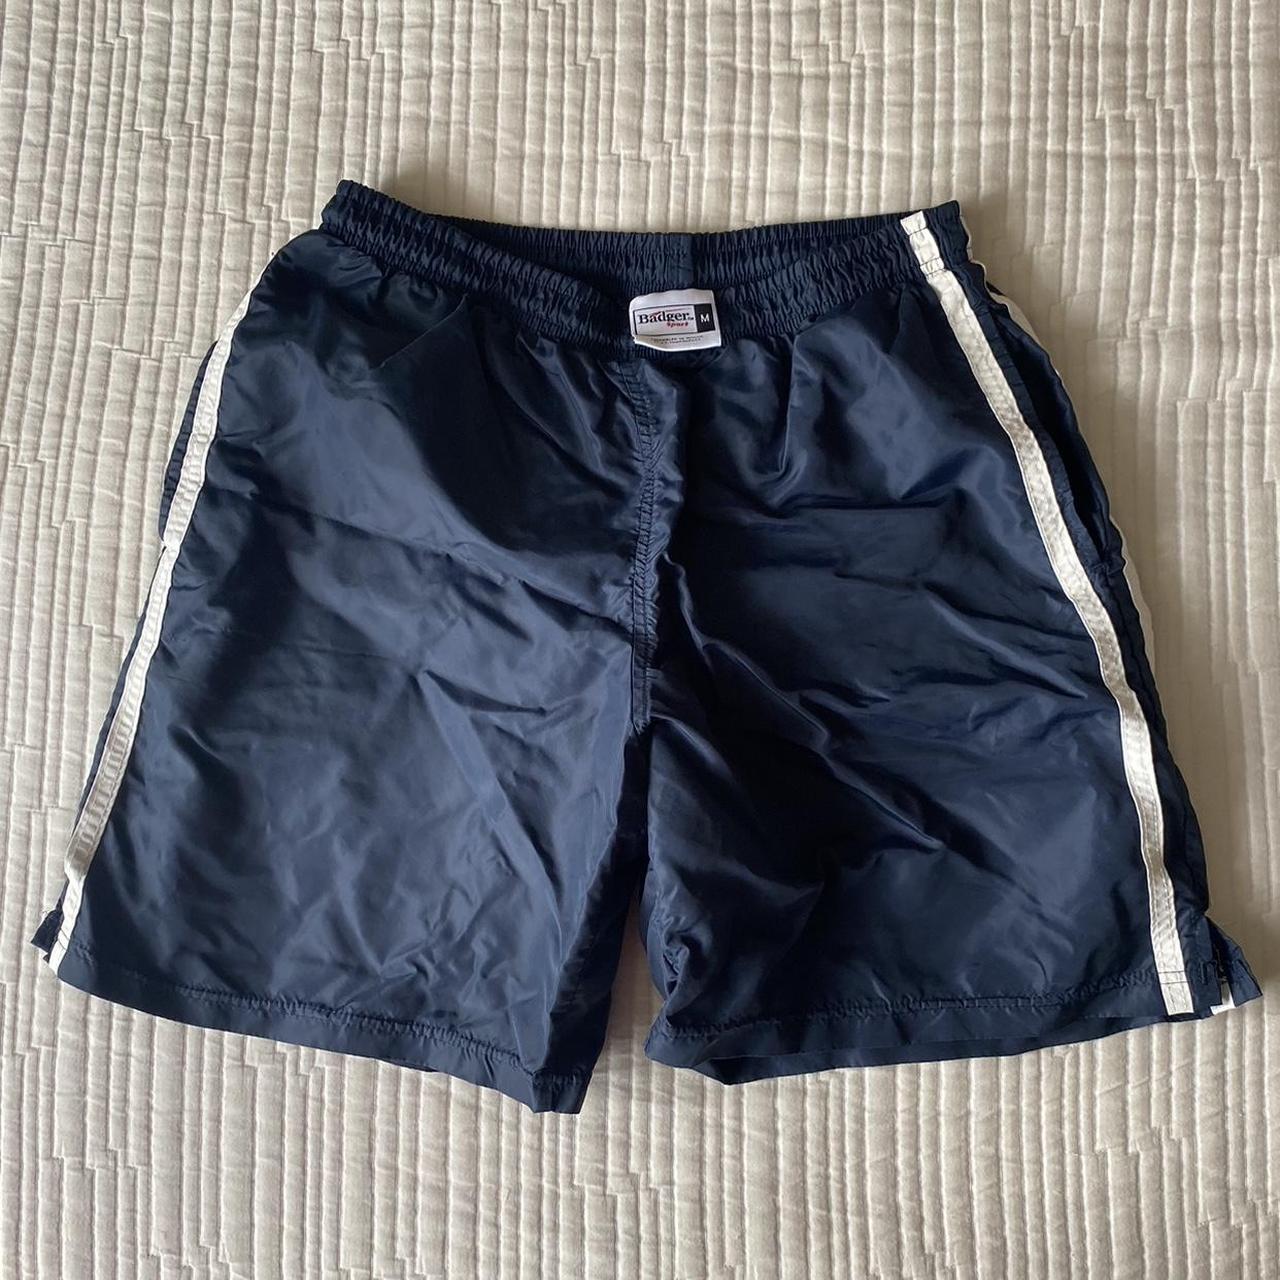 badger sport navy blue athletic shorts size... - Depop